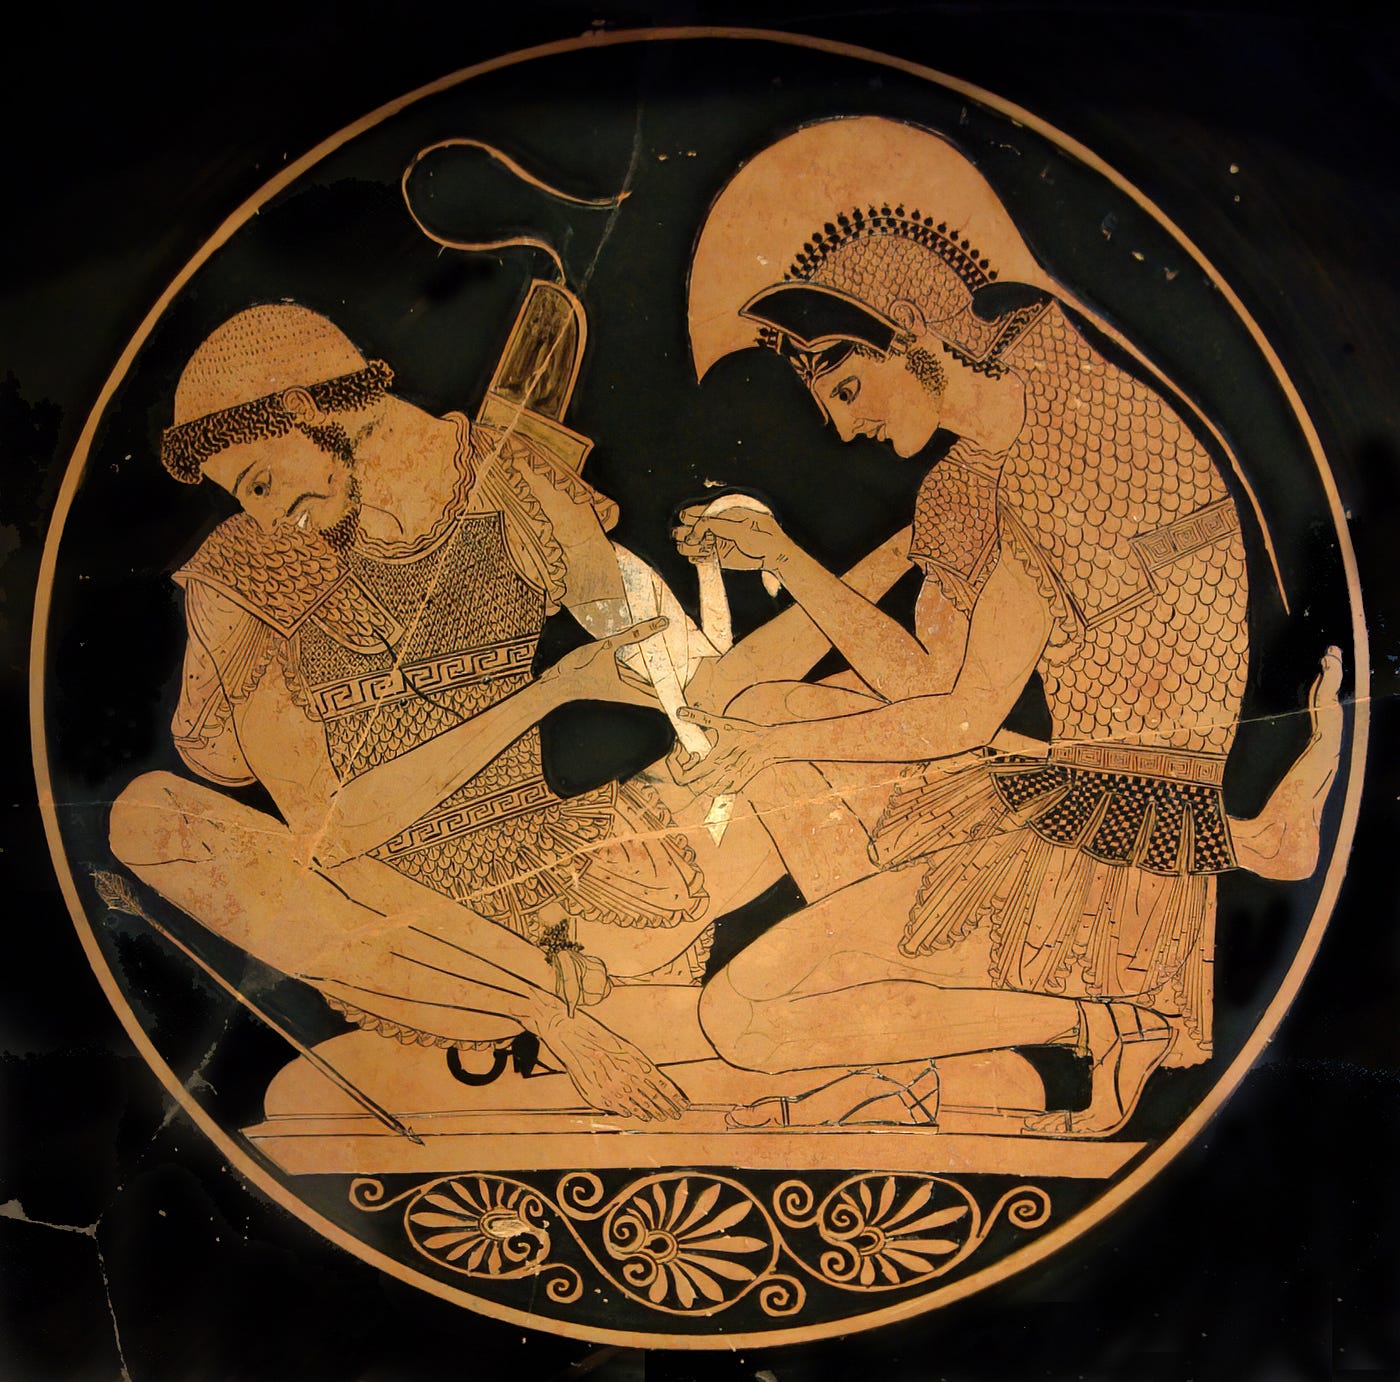 A Guerra de Troia existiu mesmo ou é um mito exagerado pelas